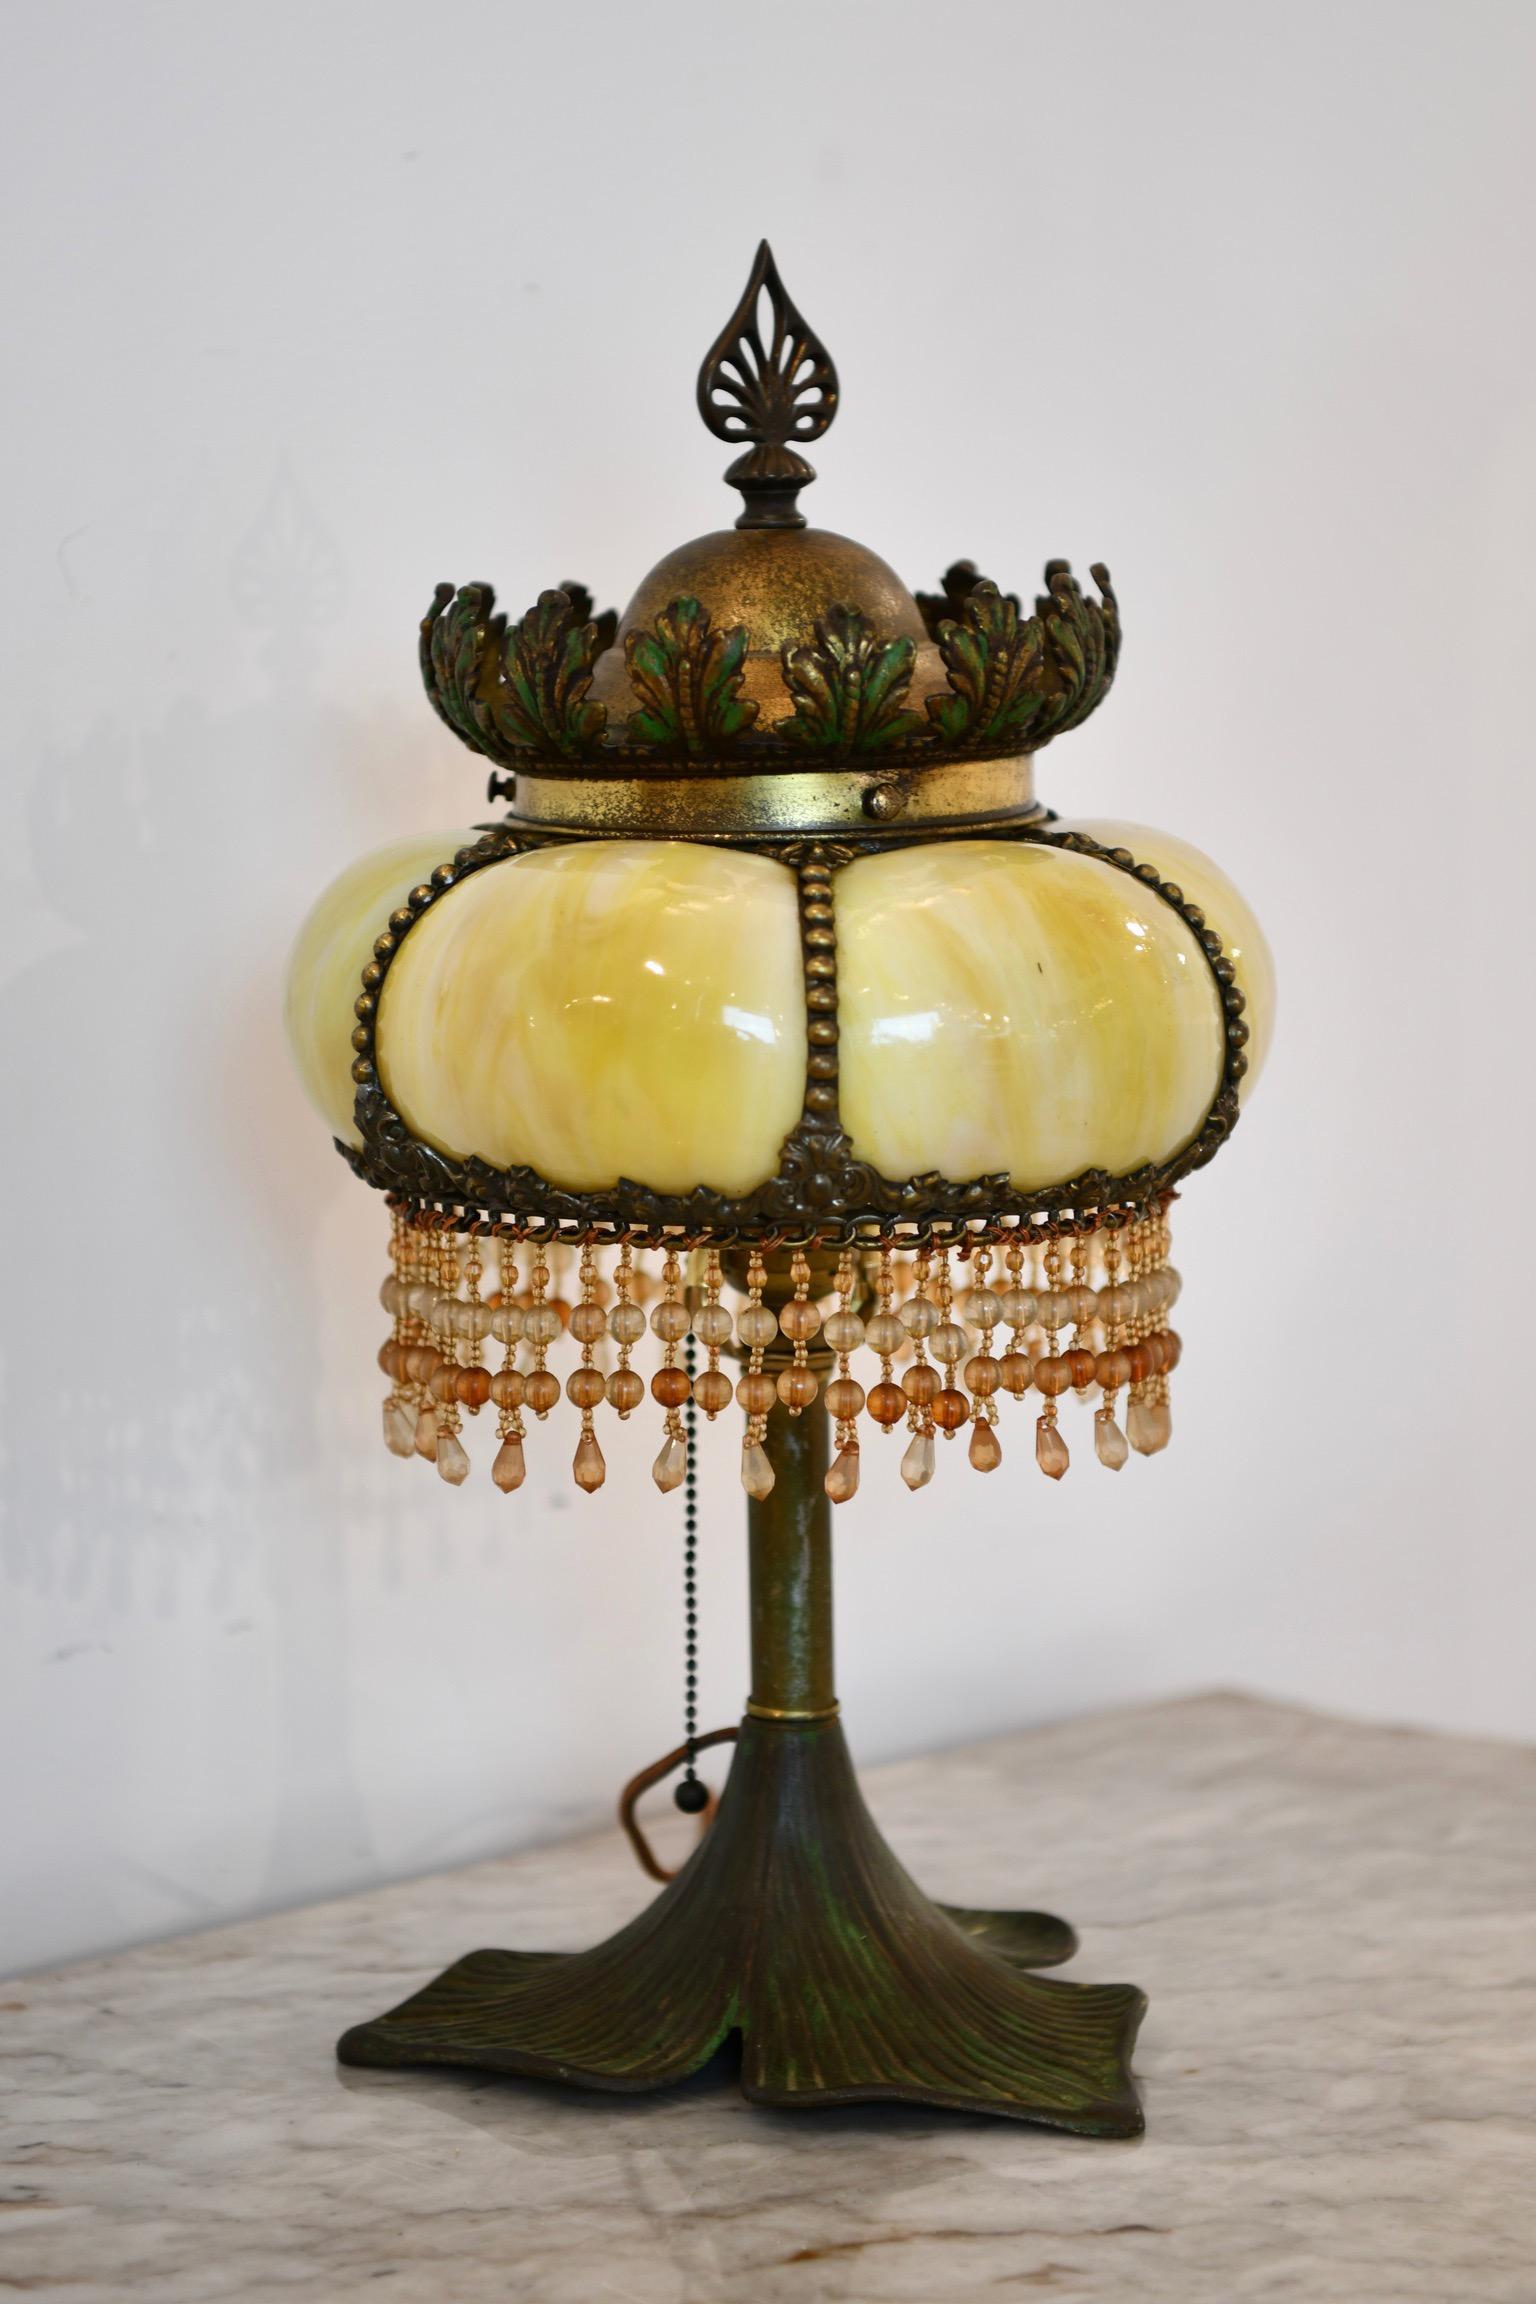 Base en forme de feuille en bronze avec un abat-jour en verre soufflé avec des perles suspendues et une couronne en bronze. Dimensions : 10 